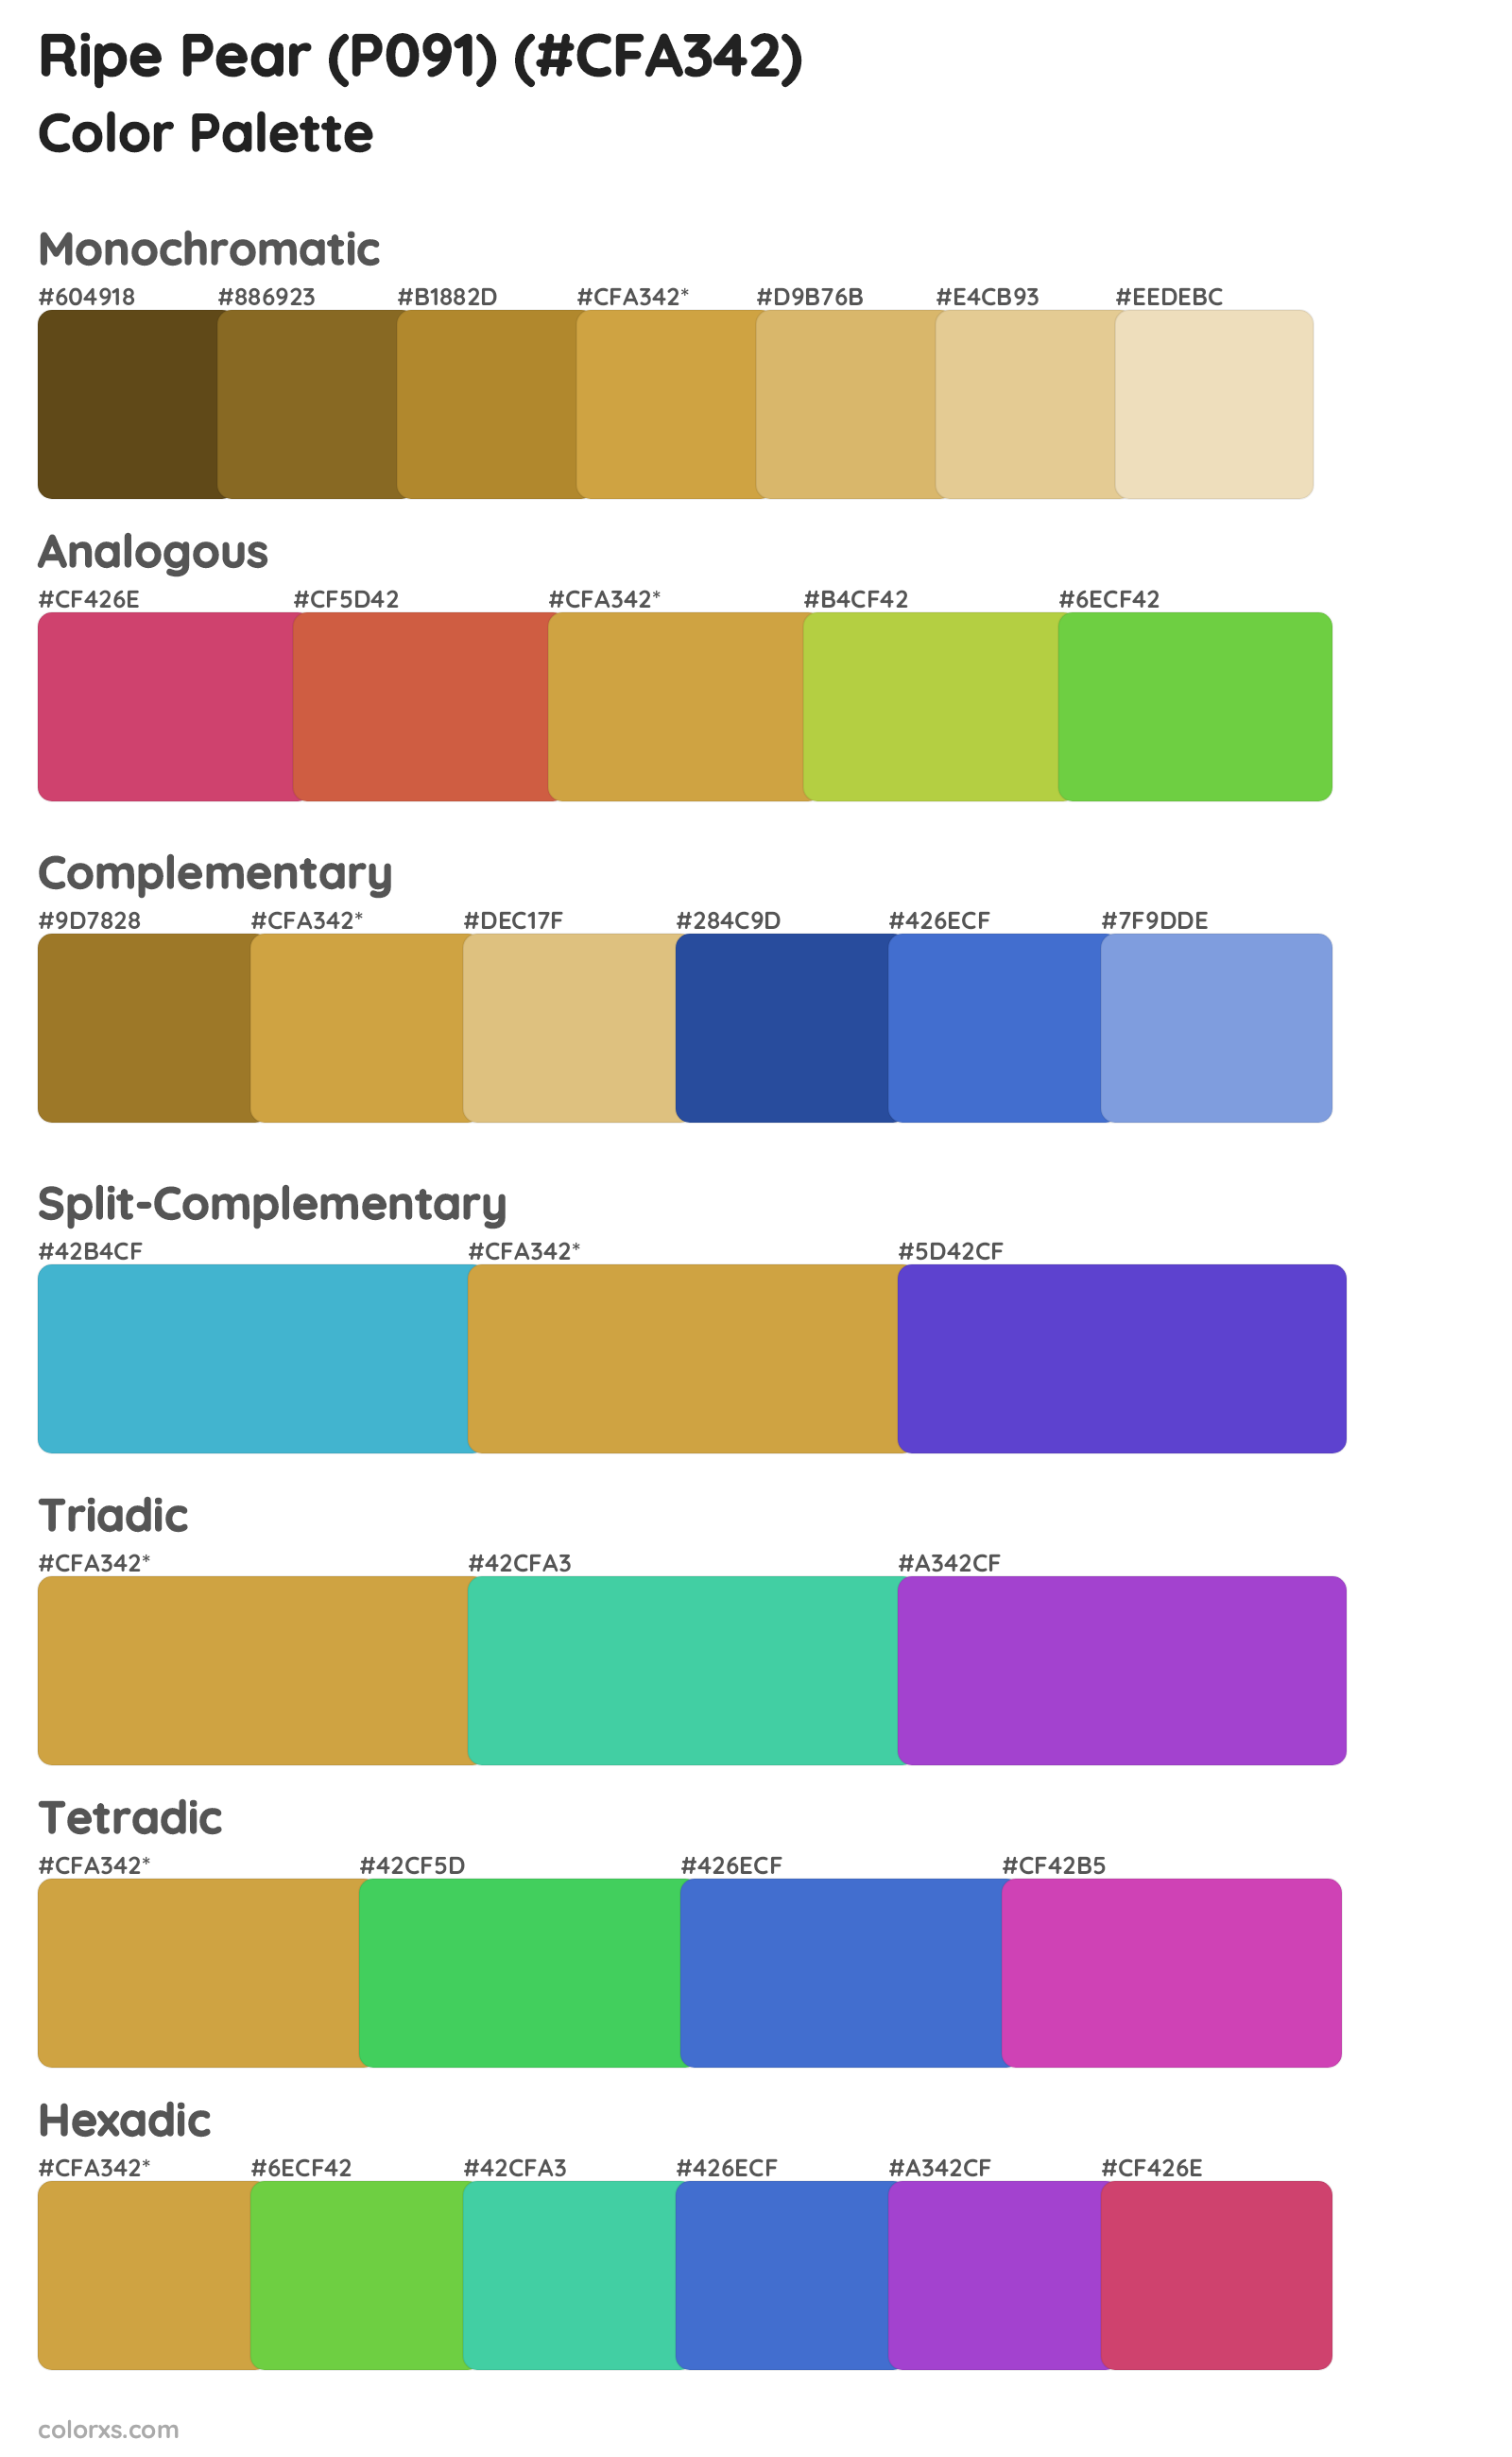 Ripe Pear (P091) Color Scheme Palettes